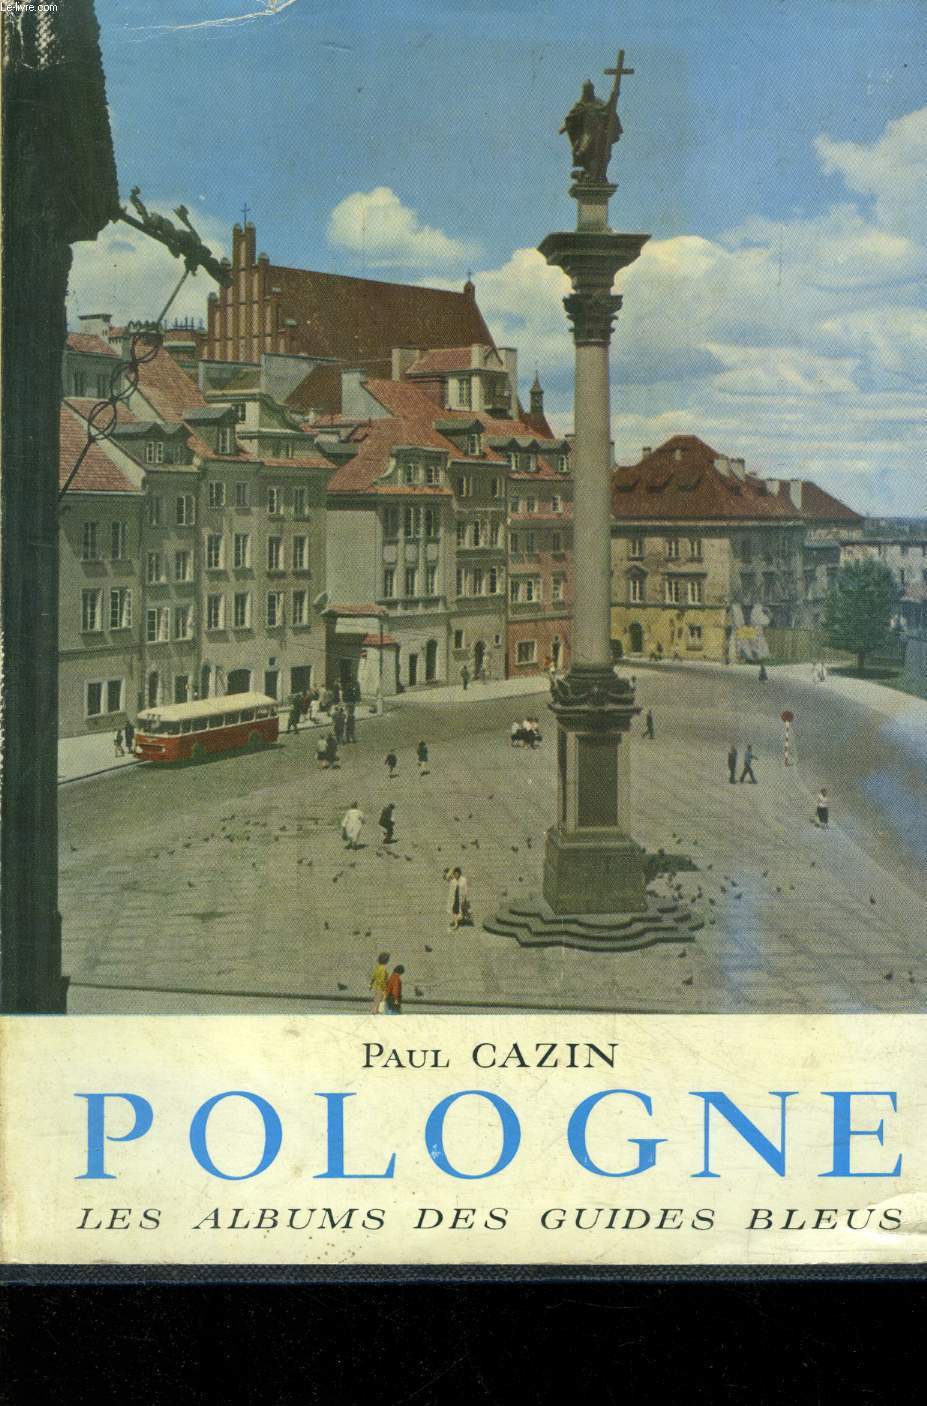 Pologne, les albums des guides bleus